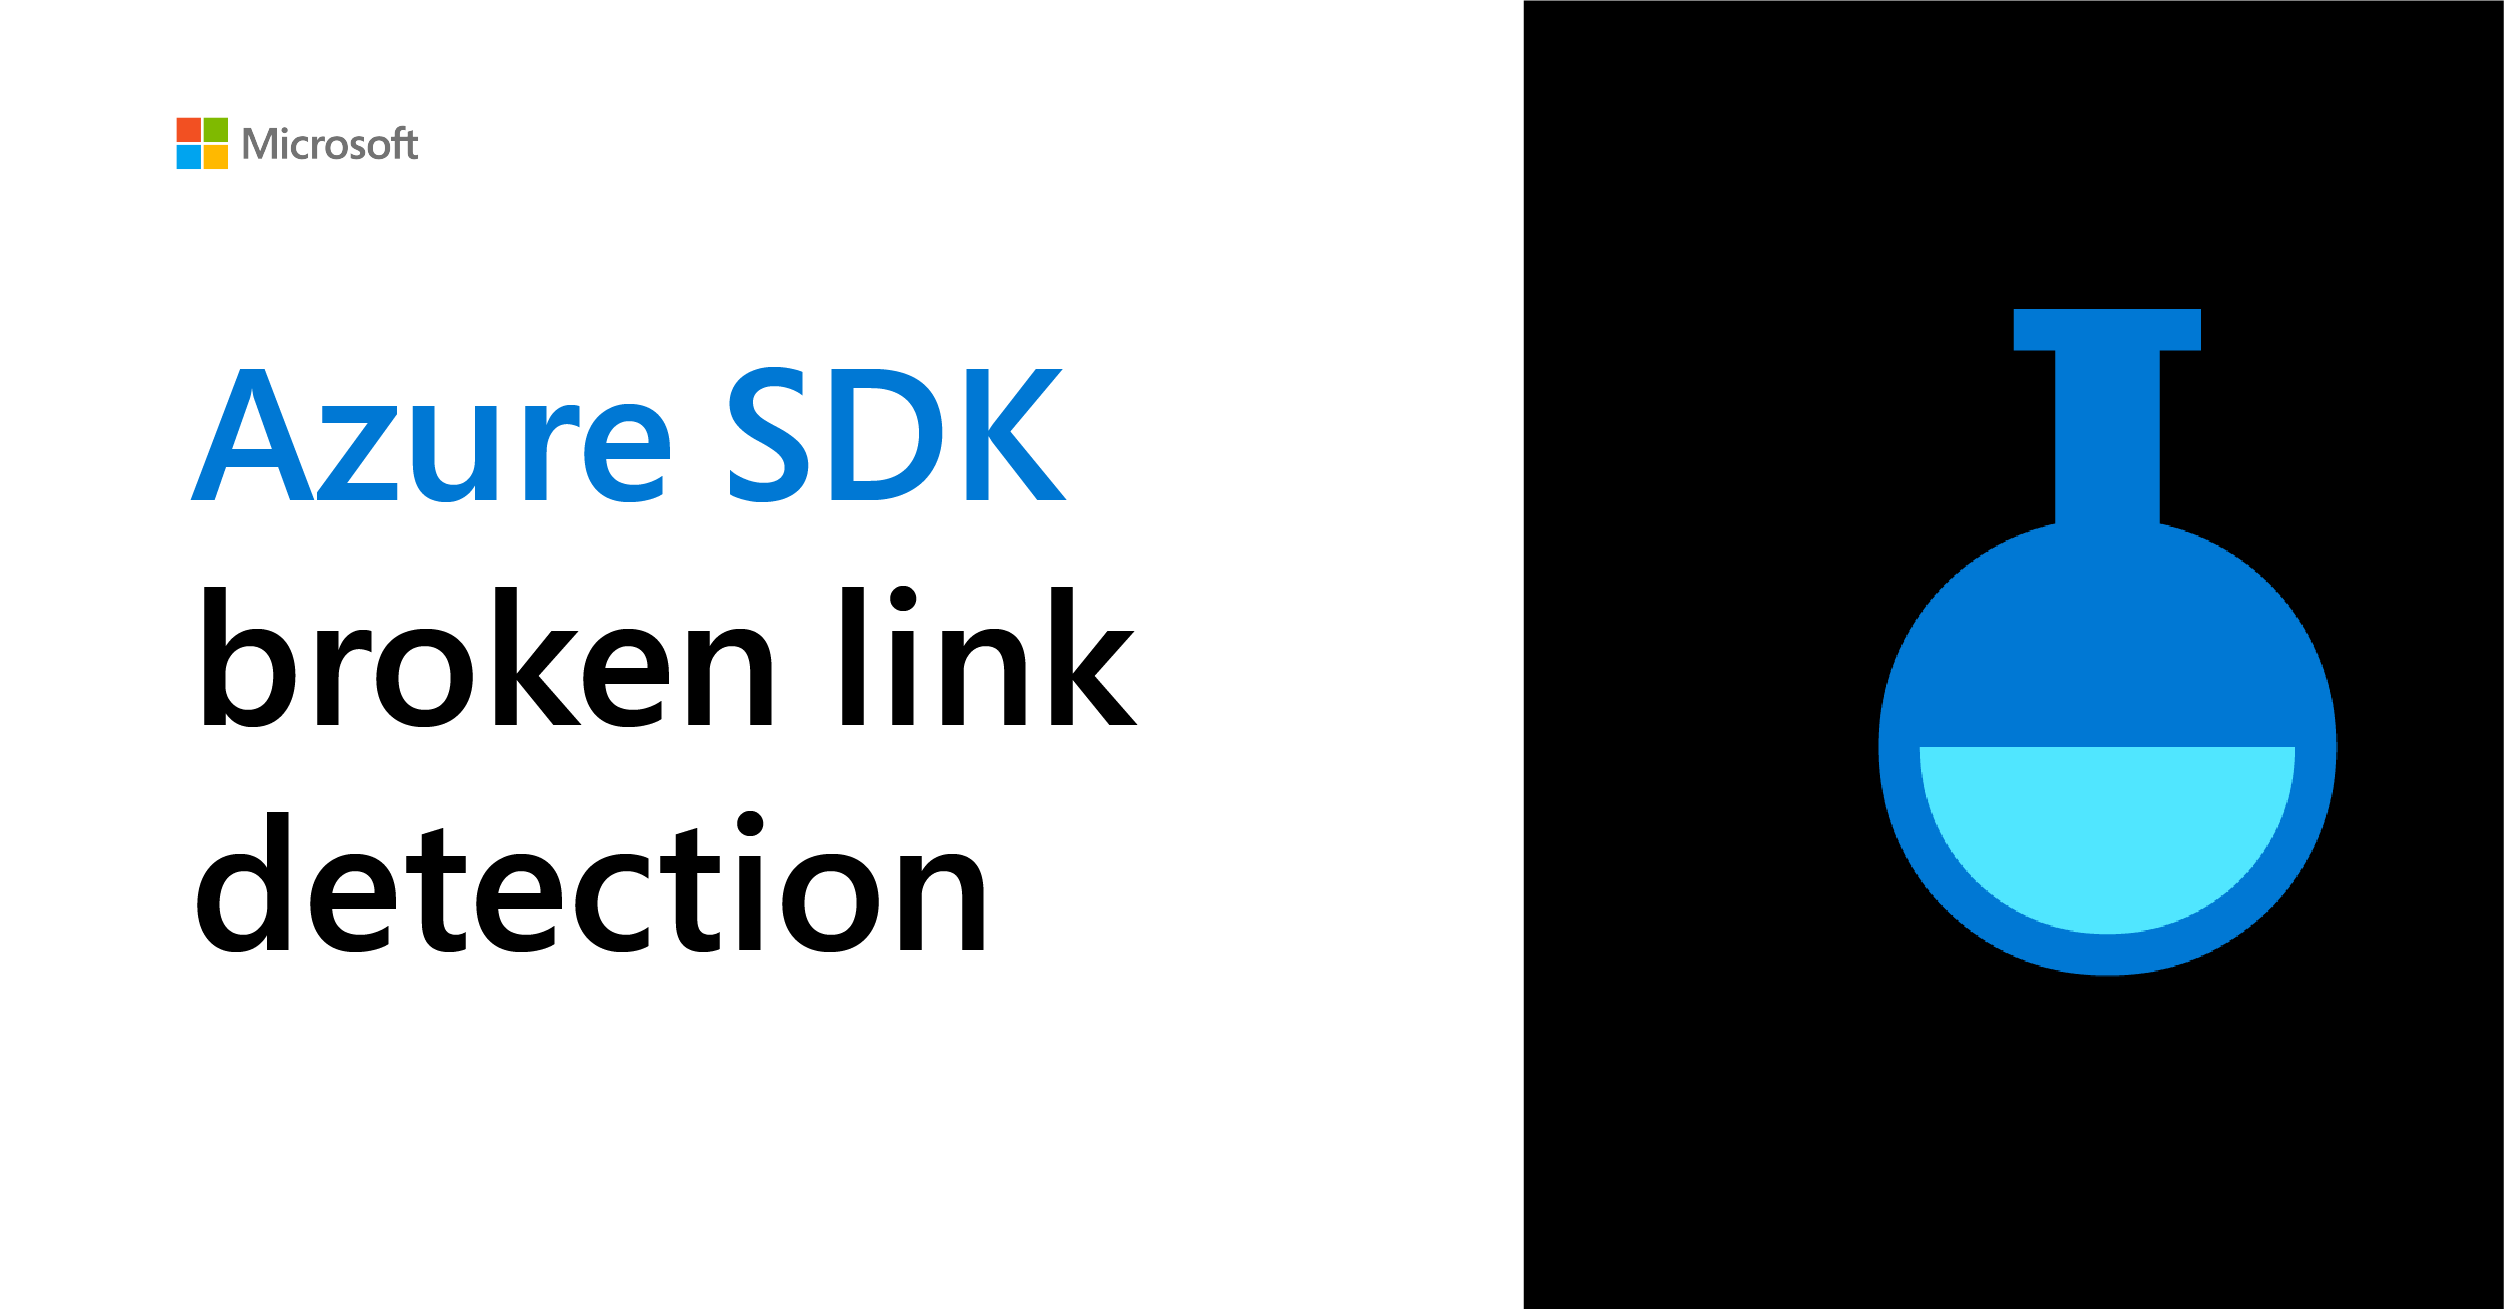 Broken link detection in the Azure SDK